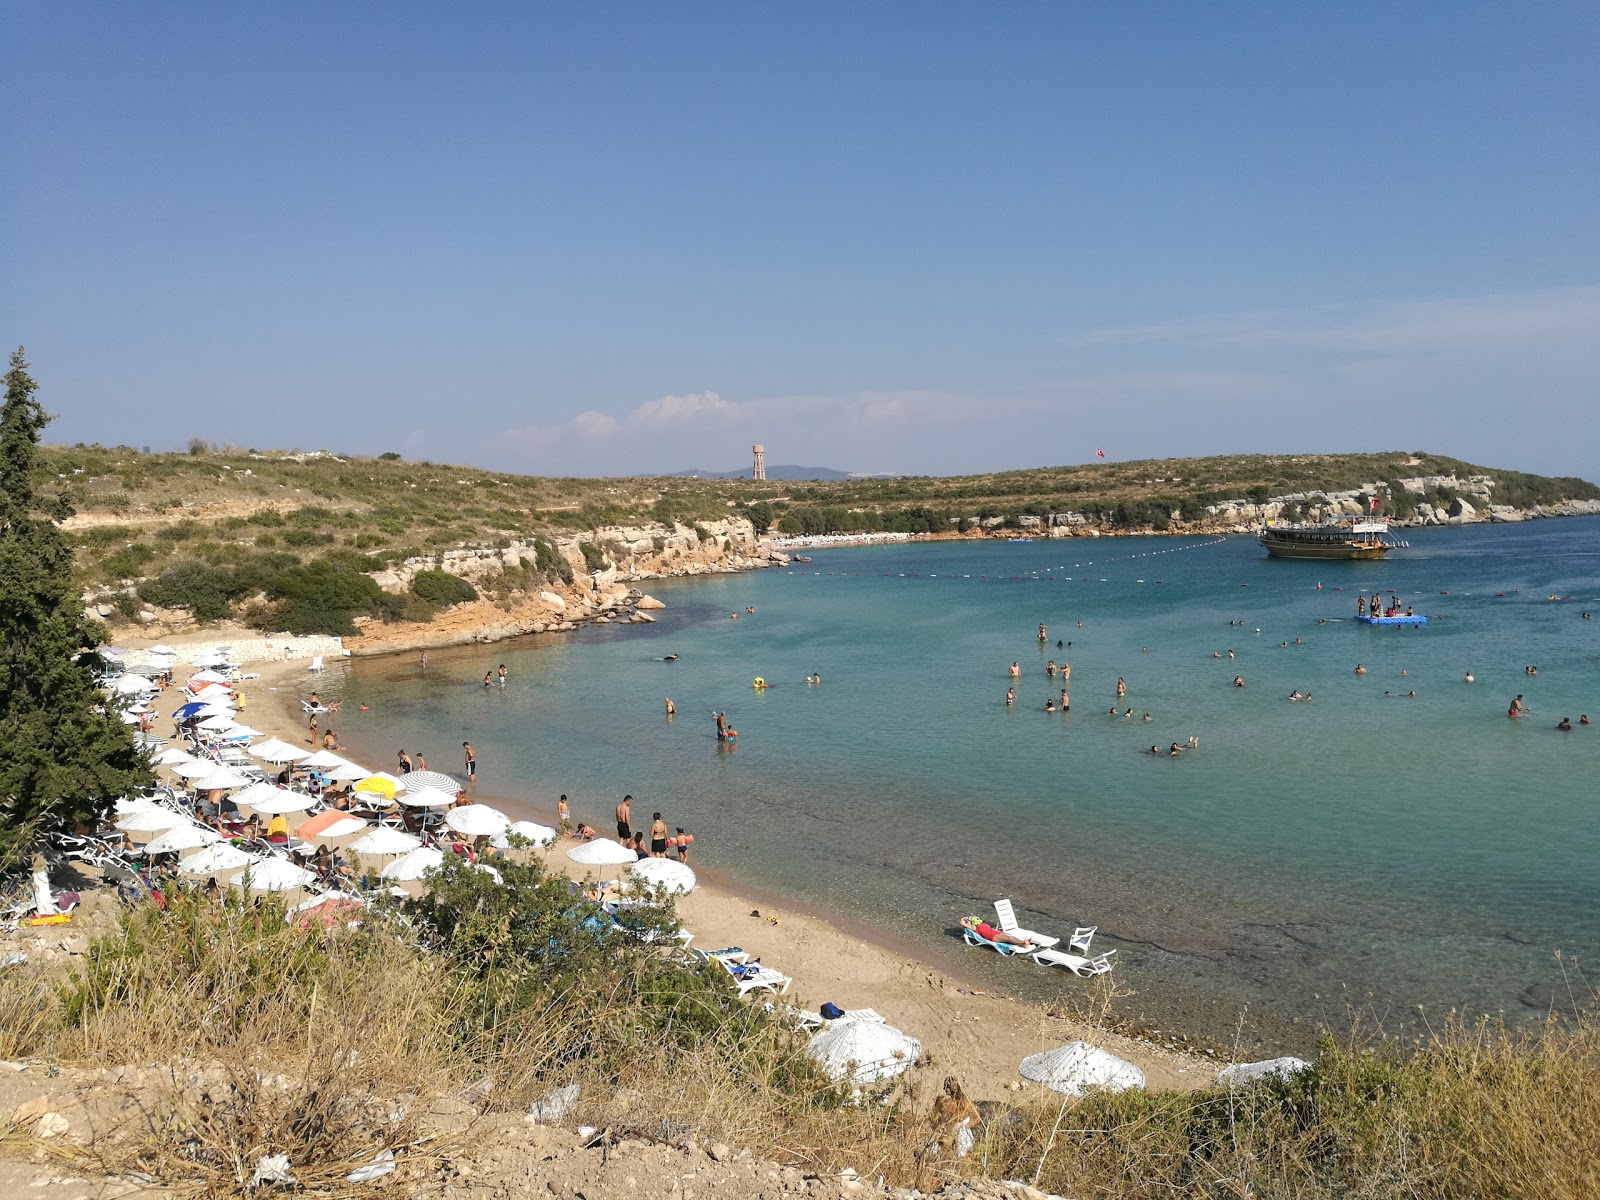 Fotografie cu Plaja din cadrul taberei Didim cu o suprafață de apa pură turcoaz